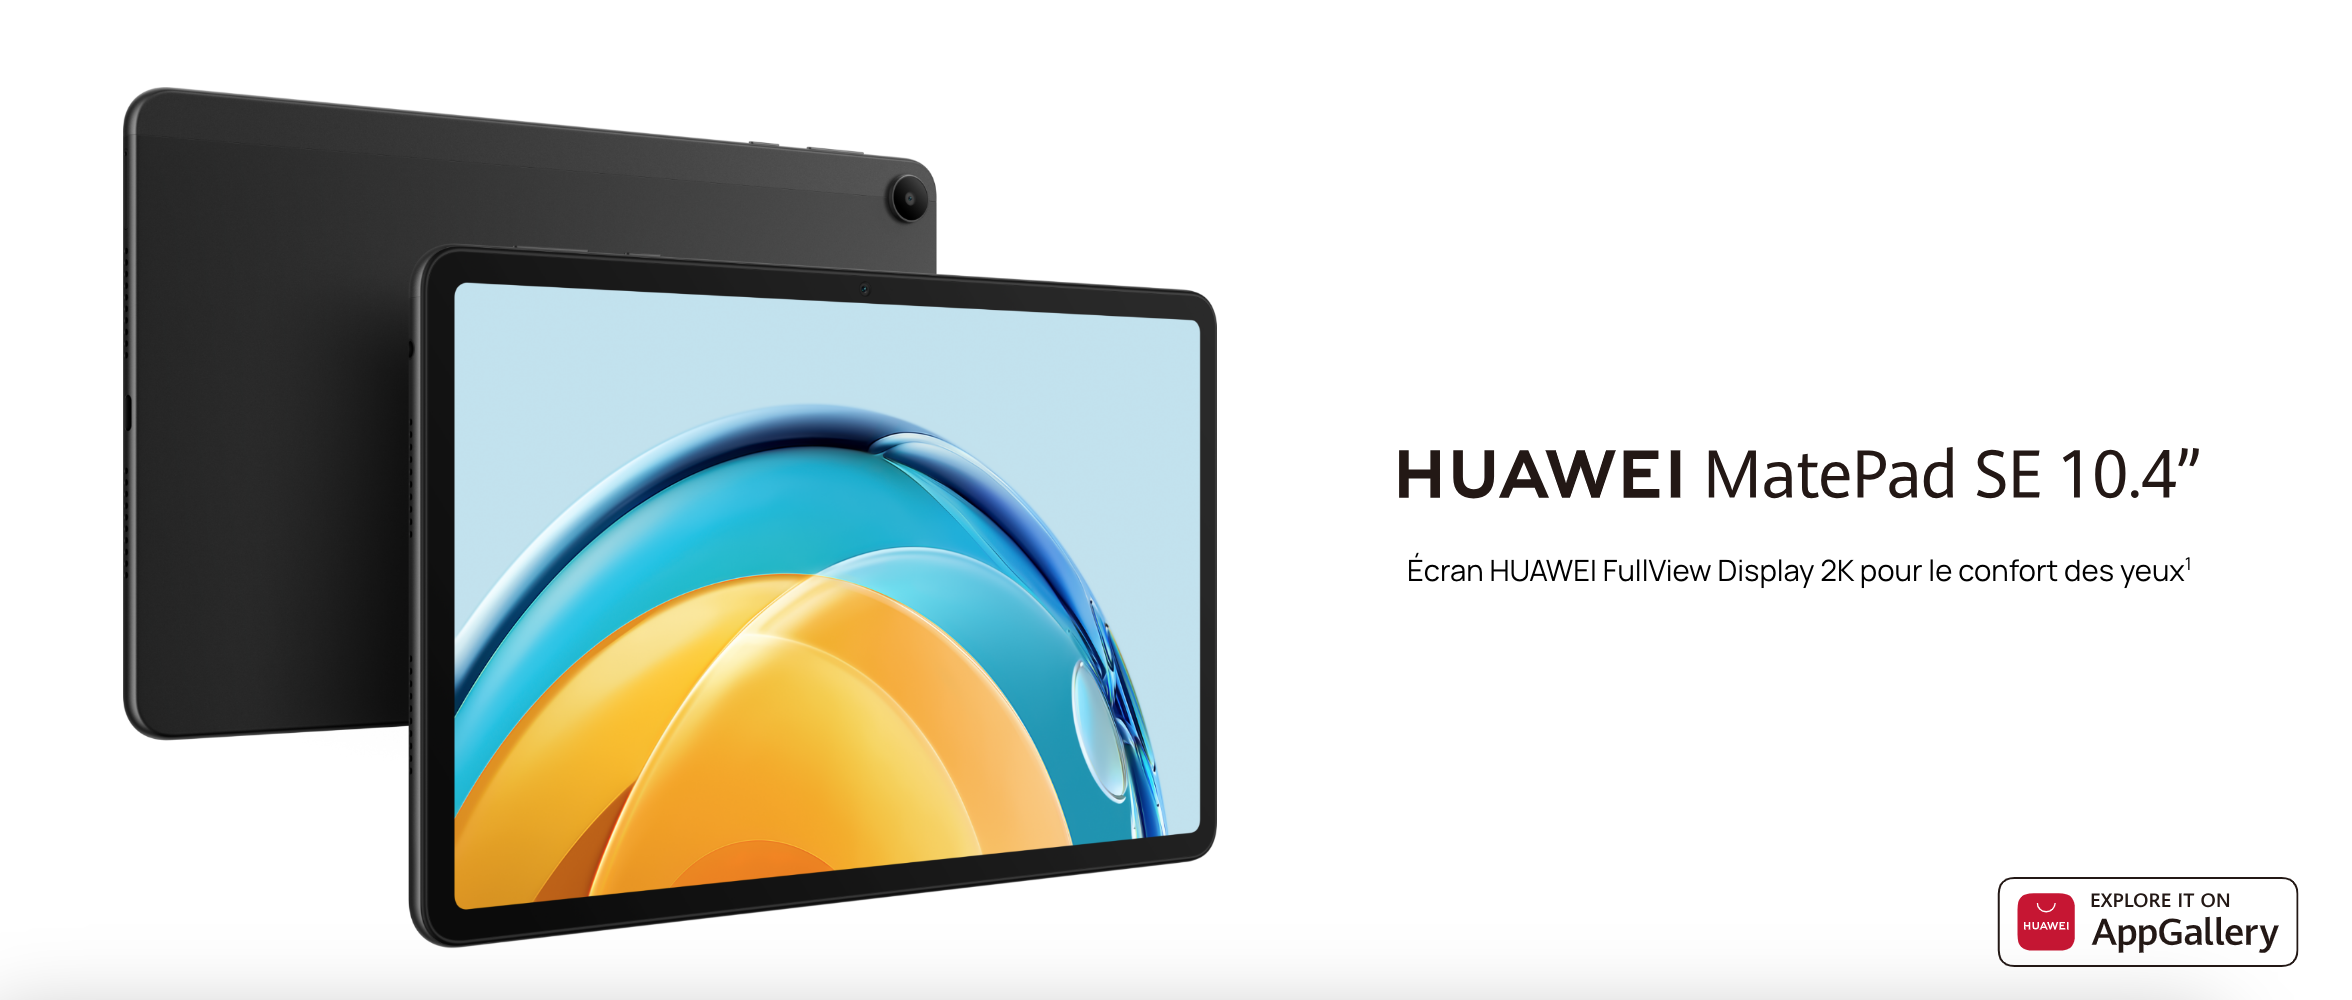 Huawei MatePad SE 